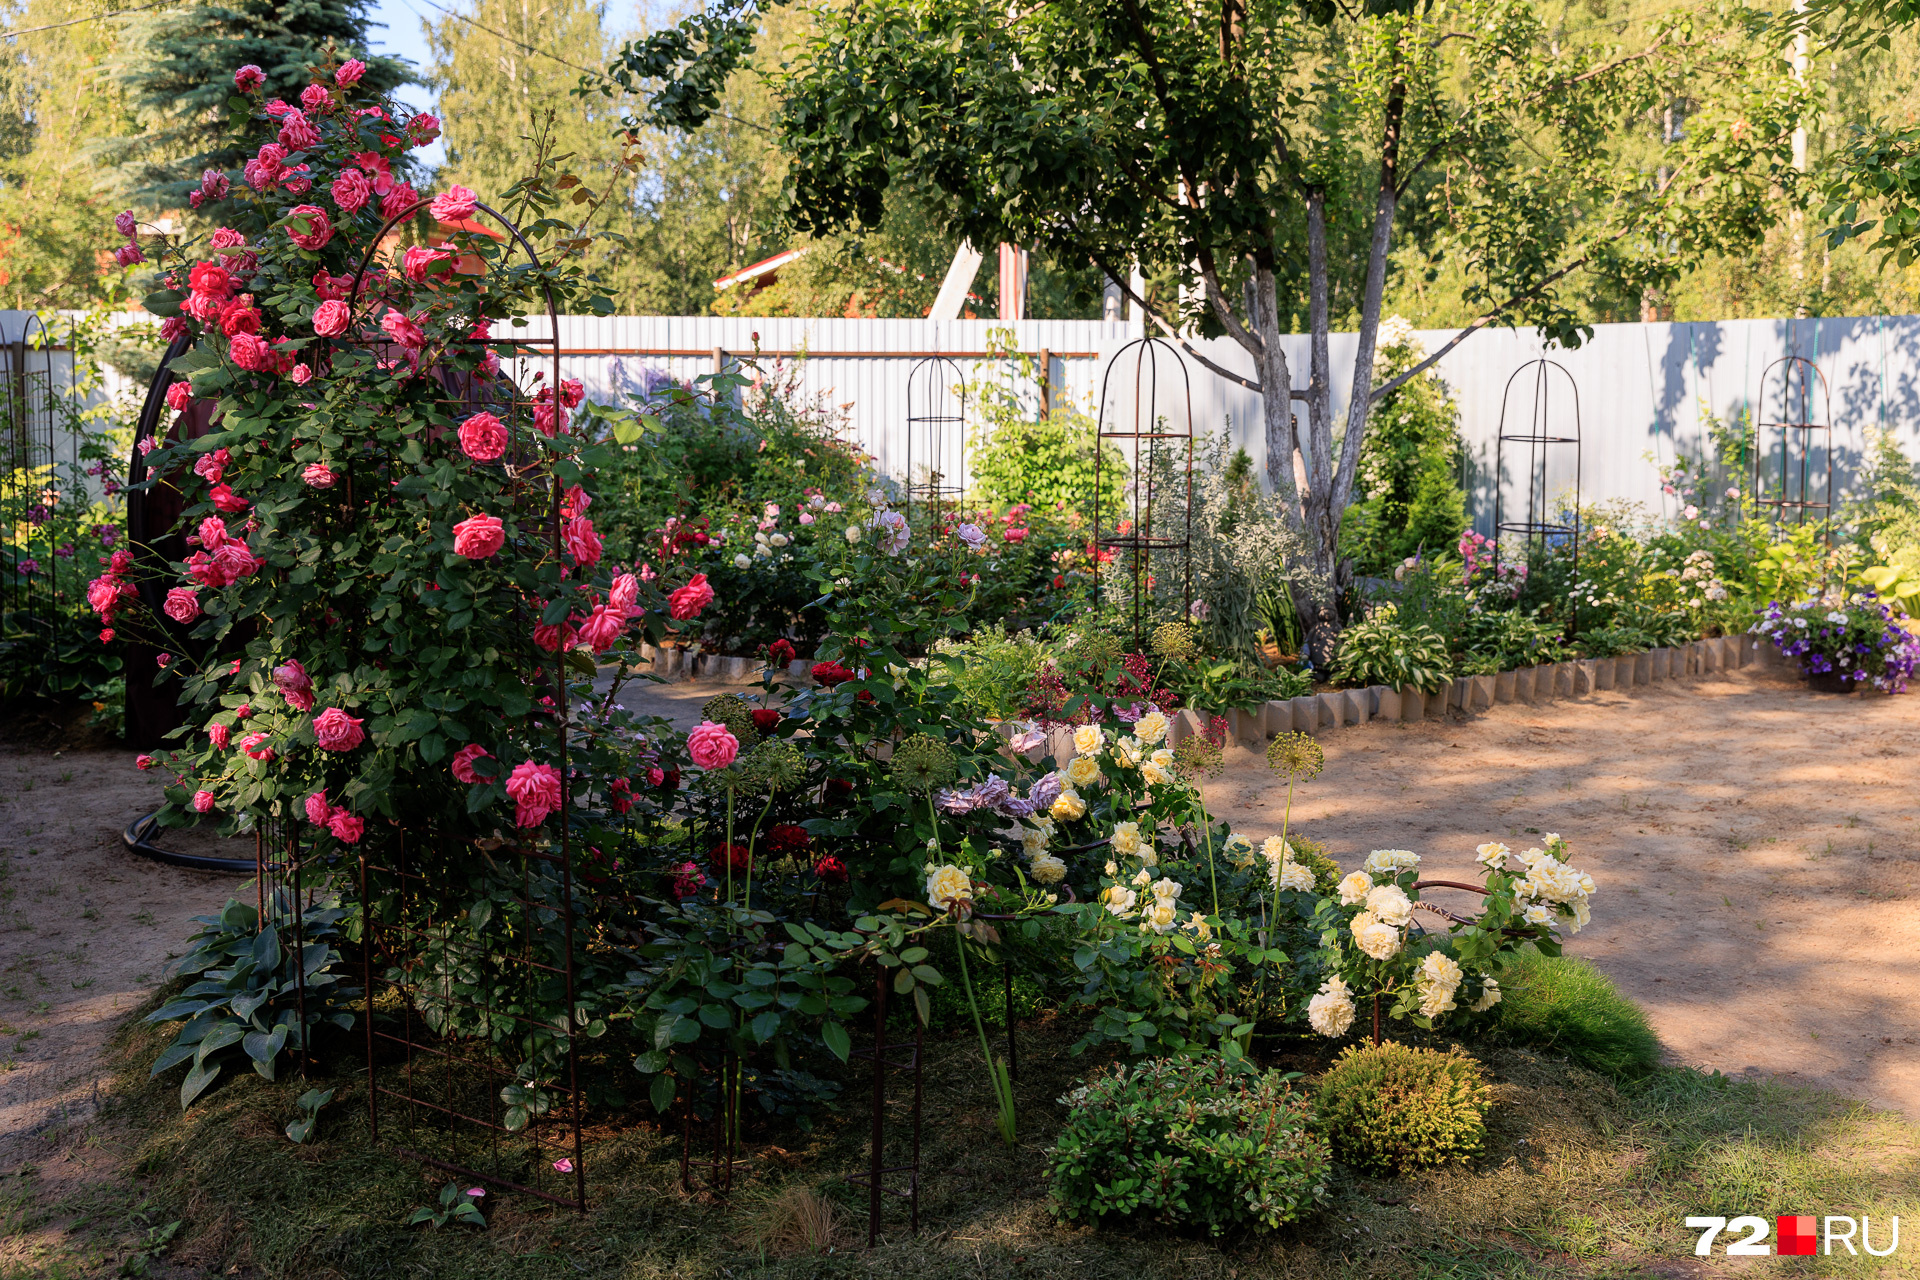 Гостей сада встречает парадный розарий с бутонами разных оттенков — от кремового до насыщенного красно-бордового